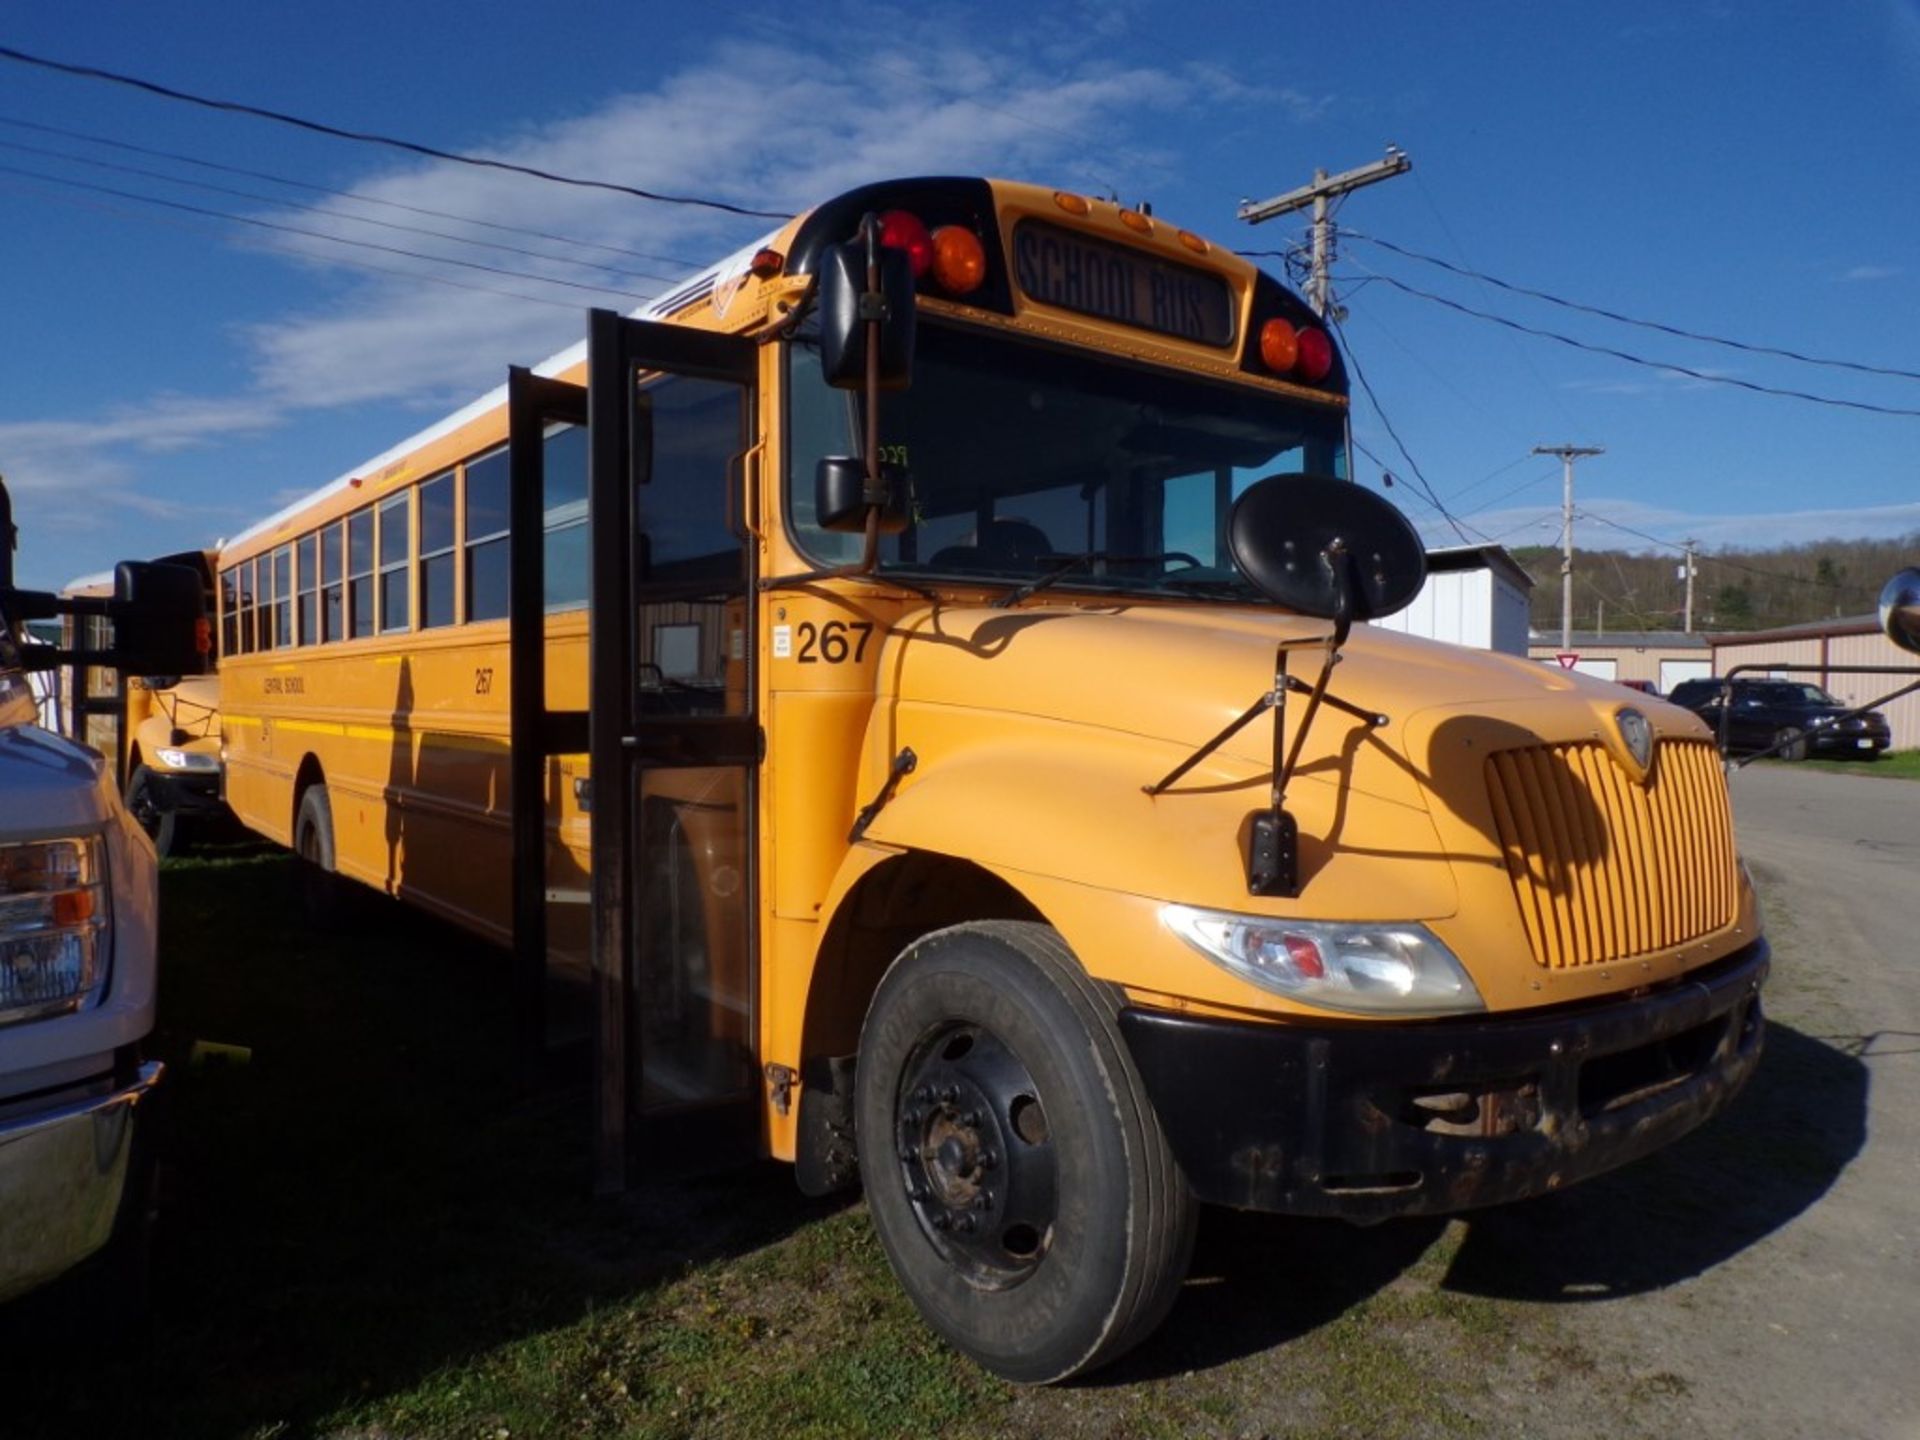 2014 International 66 Sea School Bus, Maxx Force Diesel, 139,044 Miles, #267, Vin # - Image 4 of 6